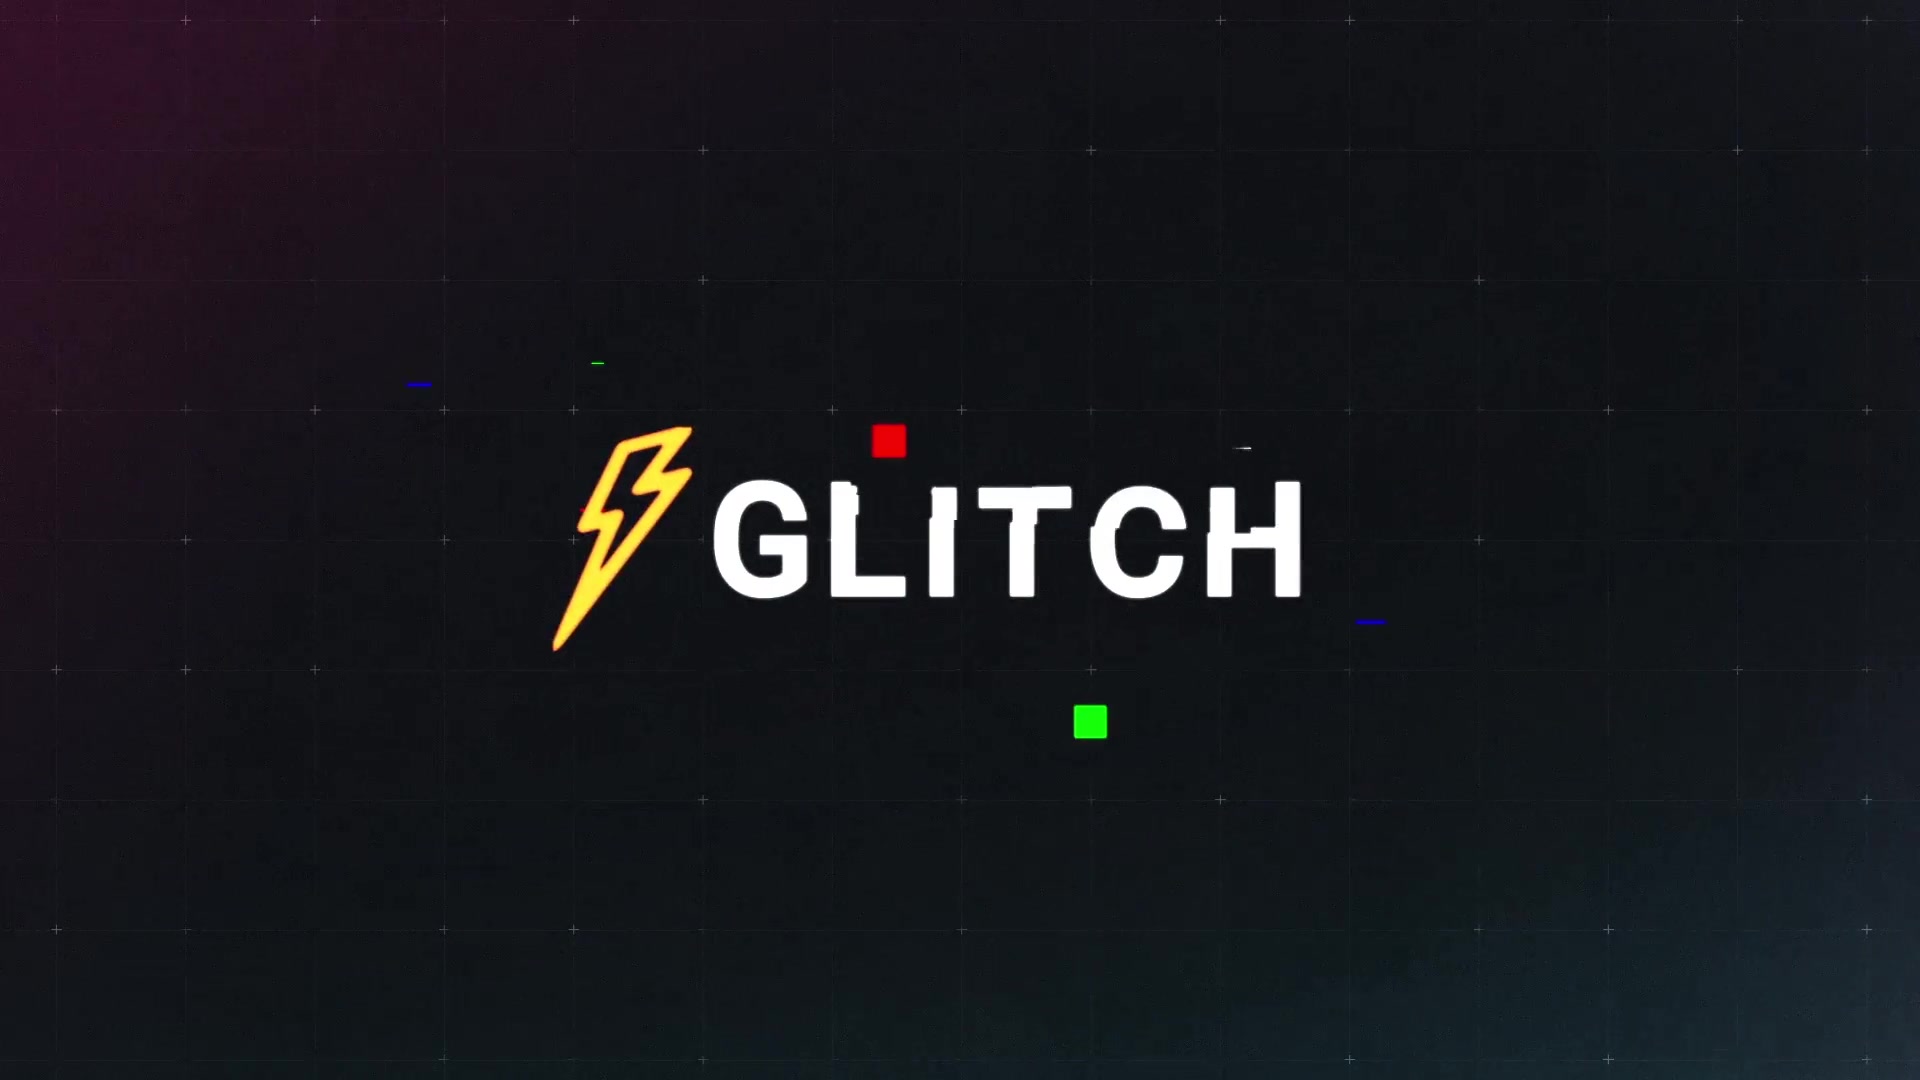 Glitch Logo Premiere Pro MOGRT Videohive 25745727 Premiere Pro Image 4